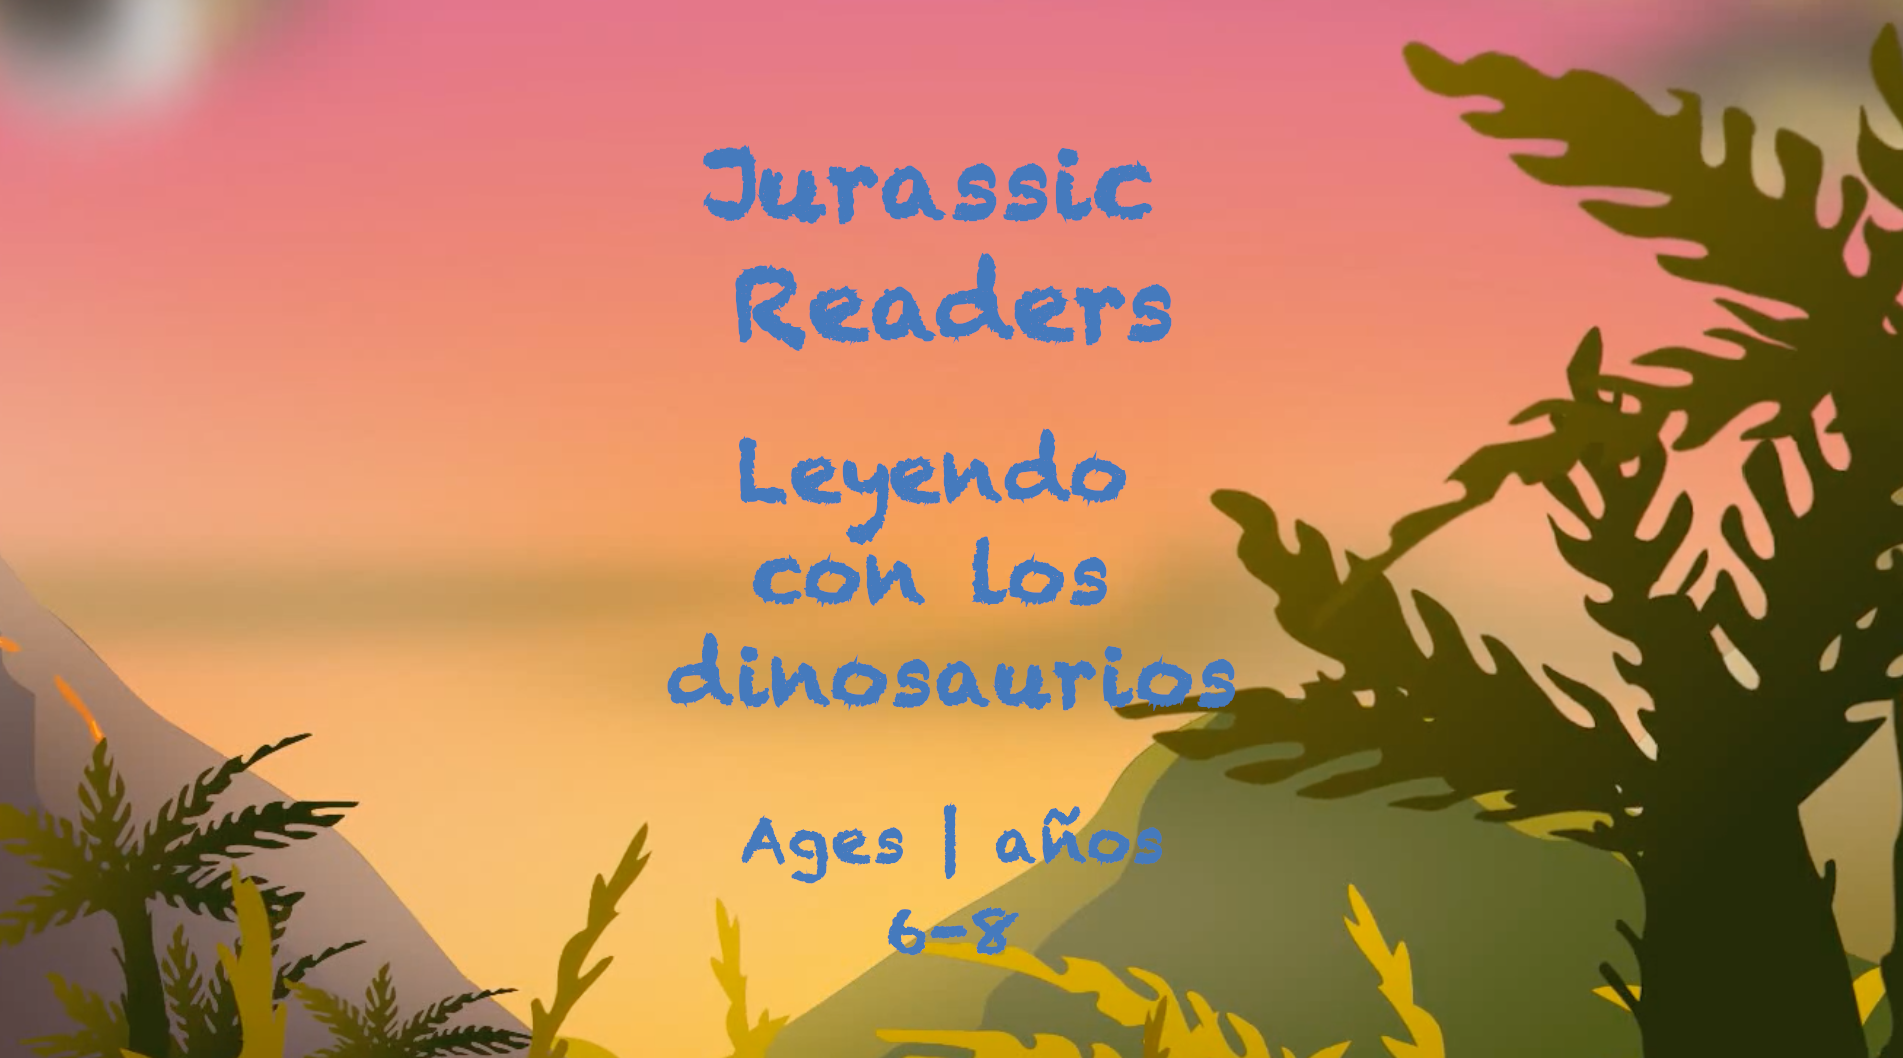 Jurassic Readers para niños de 6 a 8 años